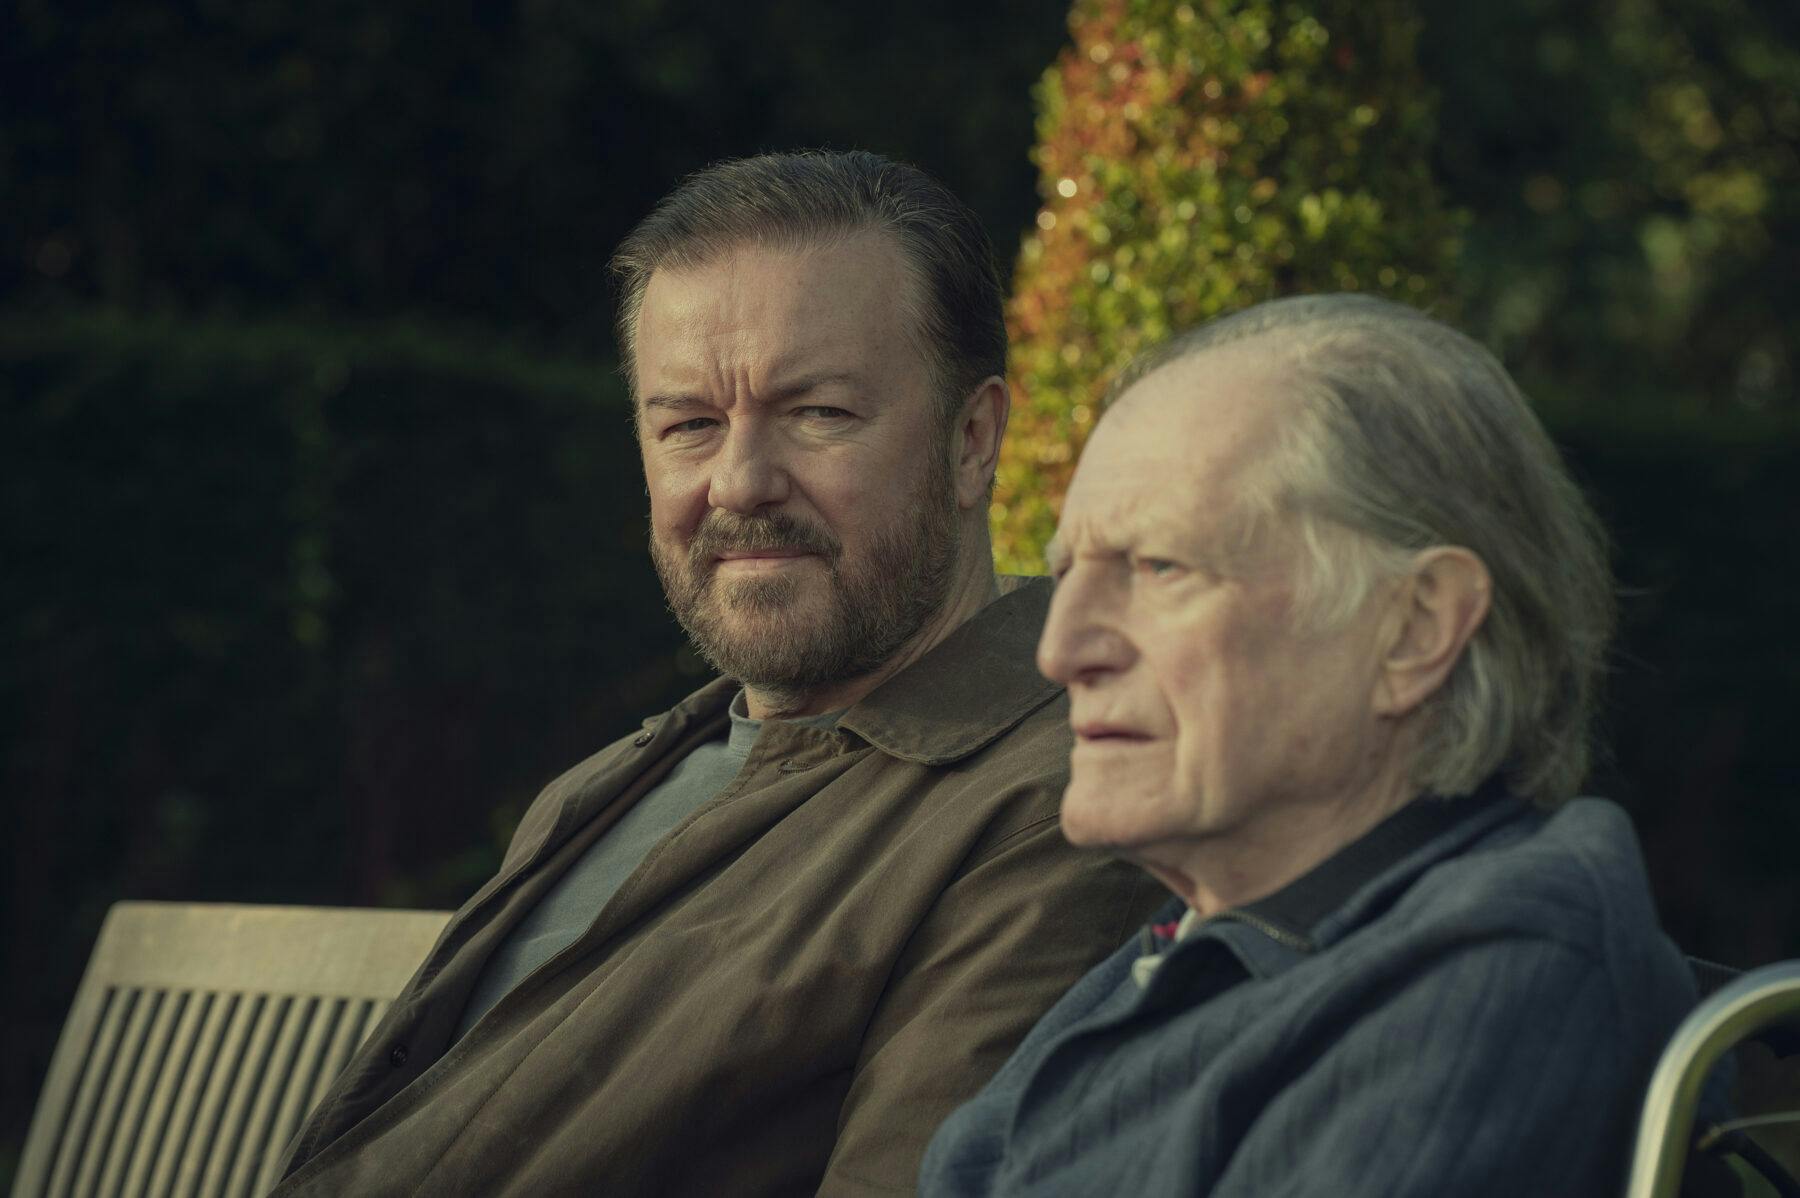 https://imgix.vielskerserier.dk/2020/06/After-Life-2_Ricky-Gervais-David-Bradley_Netflix.jpg